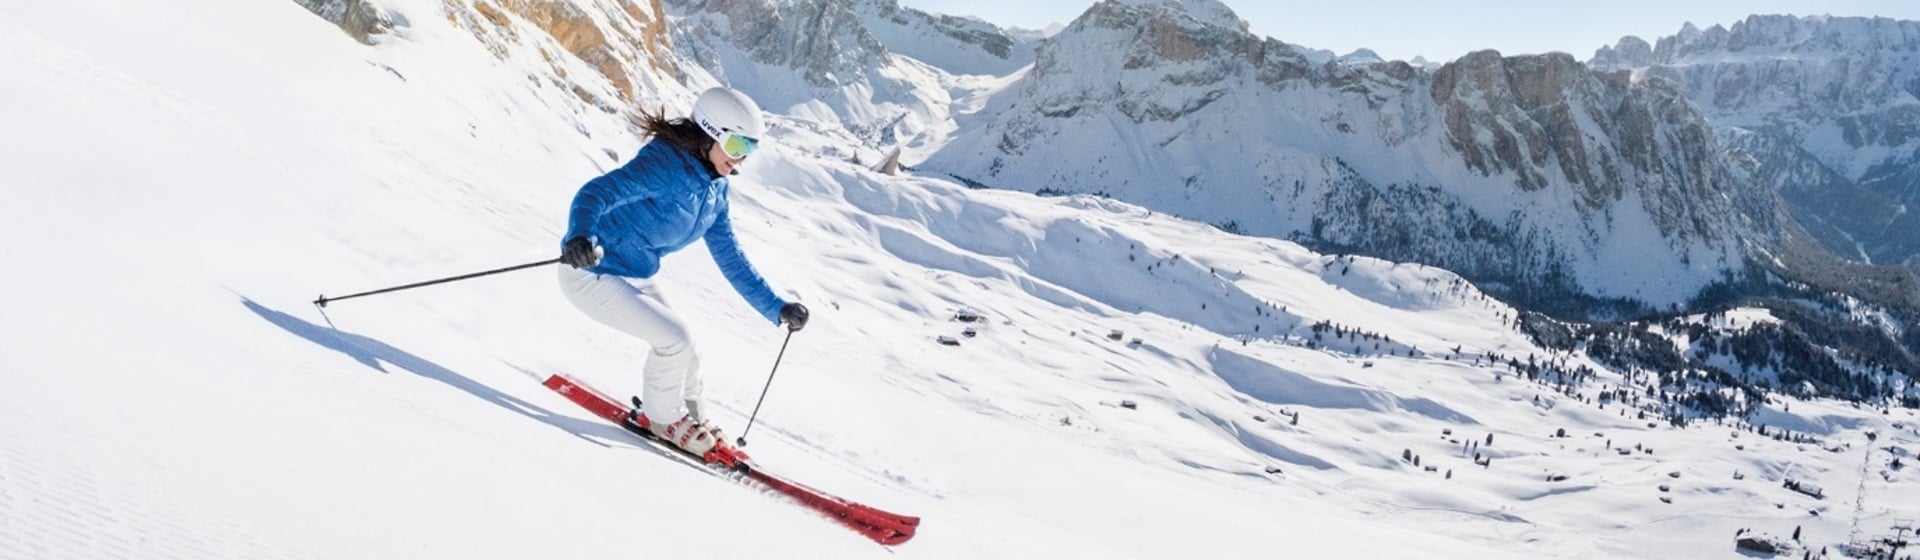 DOLOMITI SUPERSKI: Maßnahmen zur Gewährleistung höchstmöglicher Sicherheit beim Skifahren